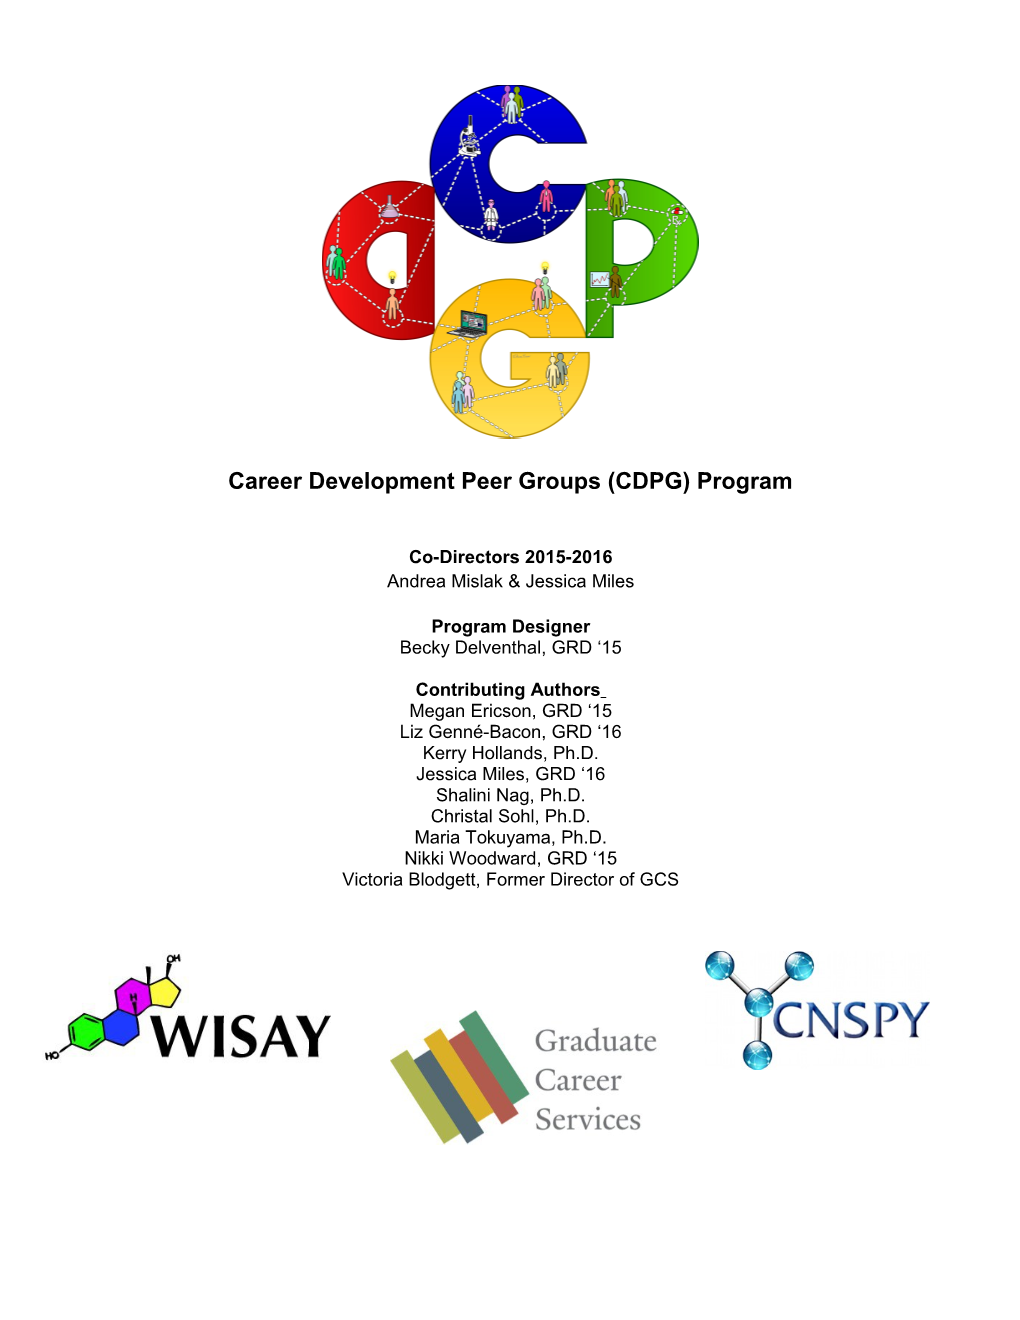 Career Development Peer Group (CDPG) Program Booklet